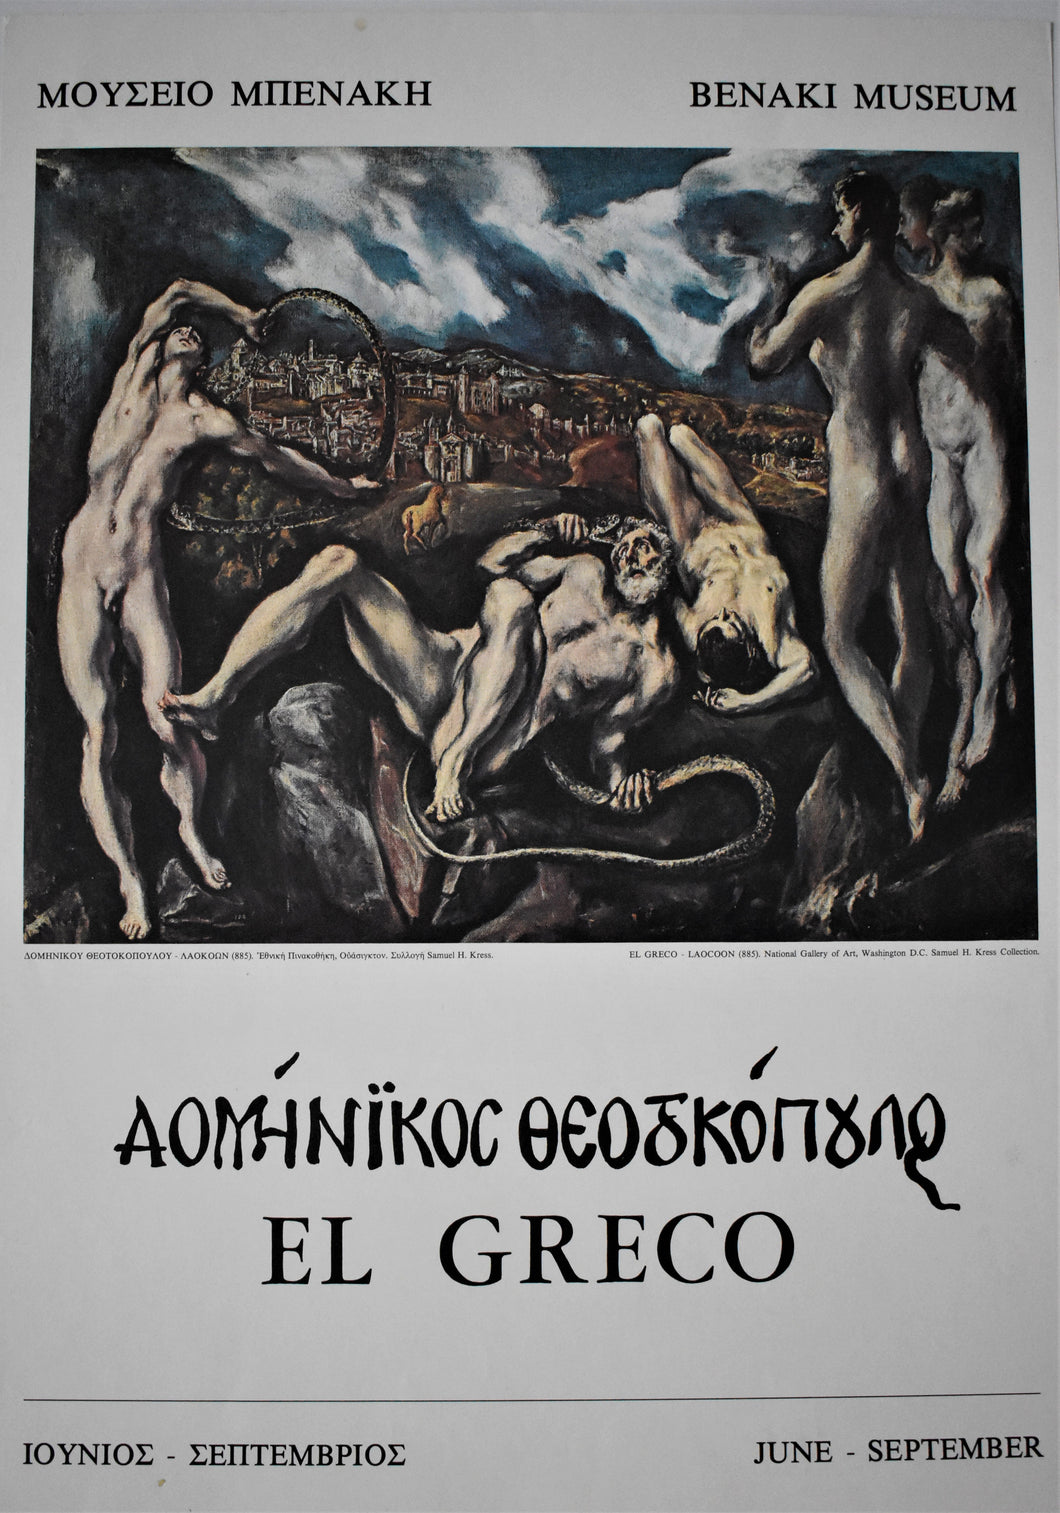 1970s El Greco Exhibition Poster - Benaki Museum